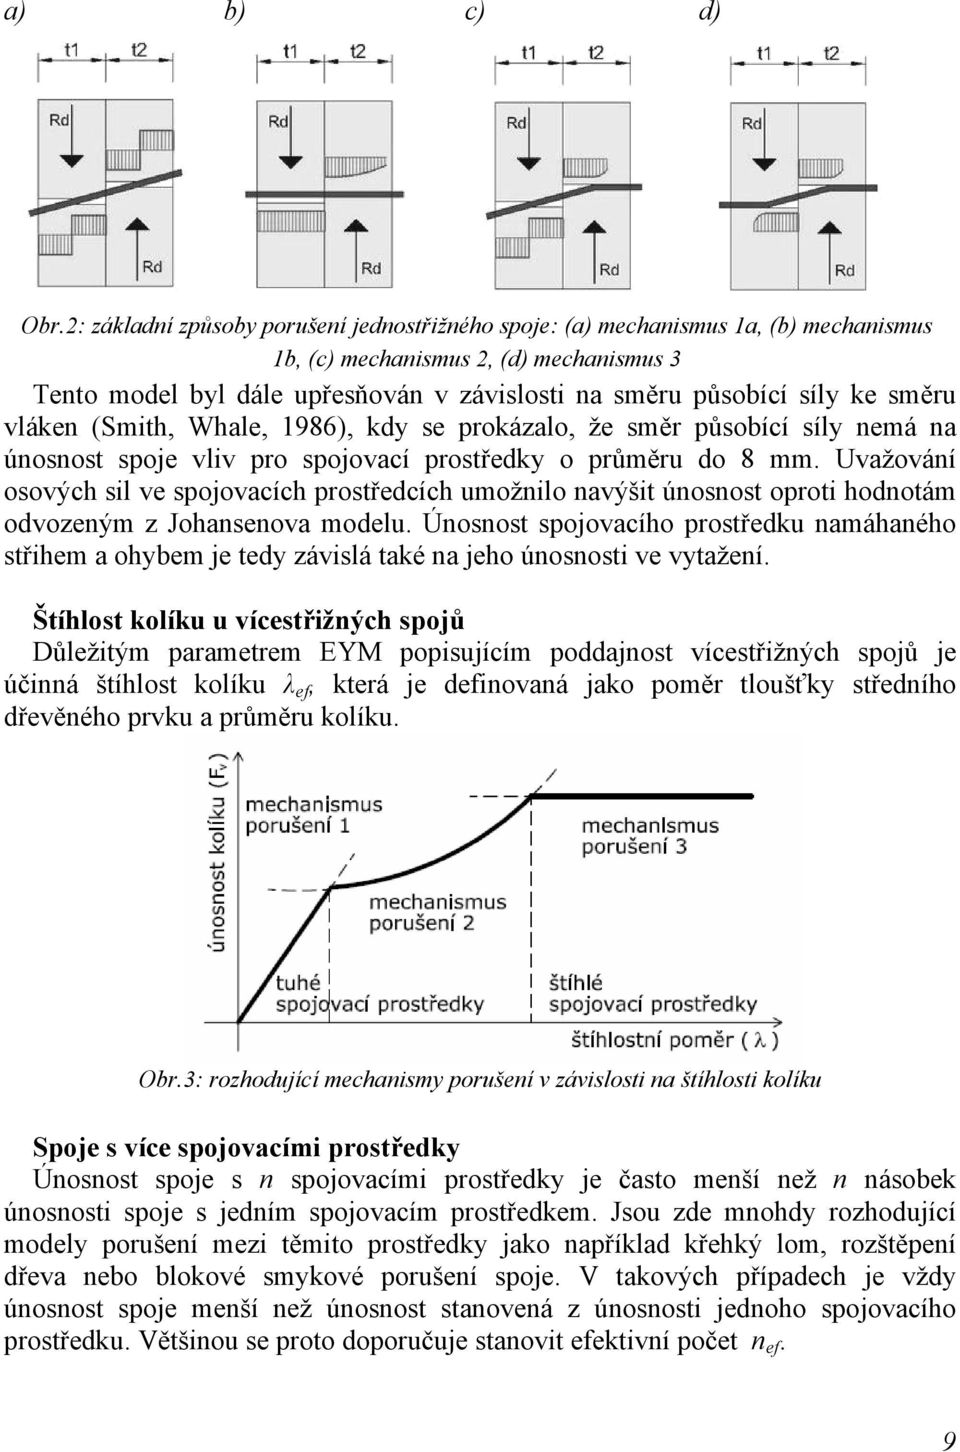 směru vláken (Smith, Whale, 1986), kdy se prokázalo, že směr působící síly nemá na únosnost spoje vliv pro spojovací prostředky o průměru do 8 mm.